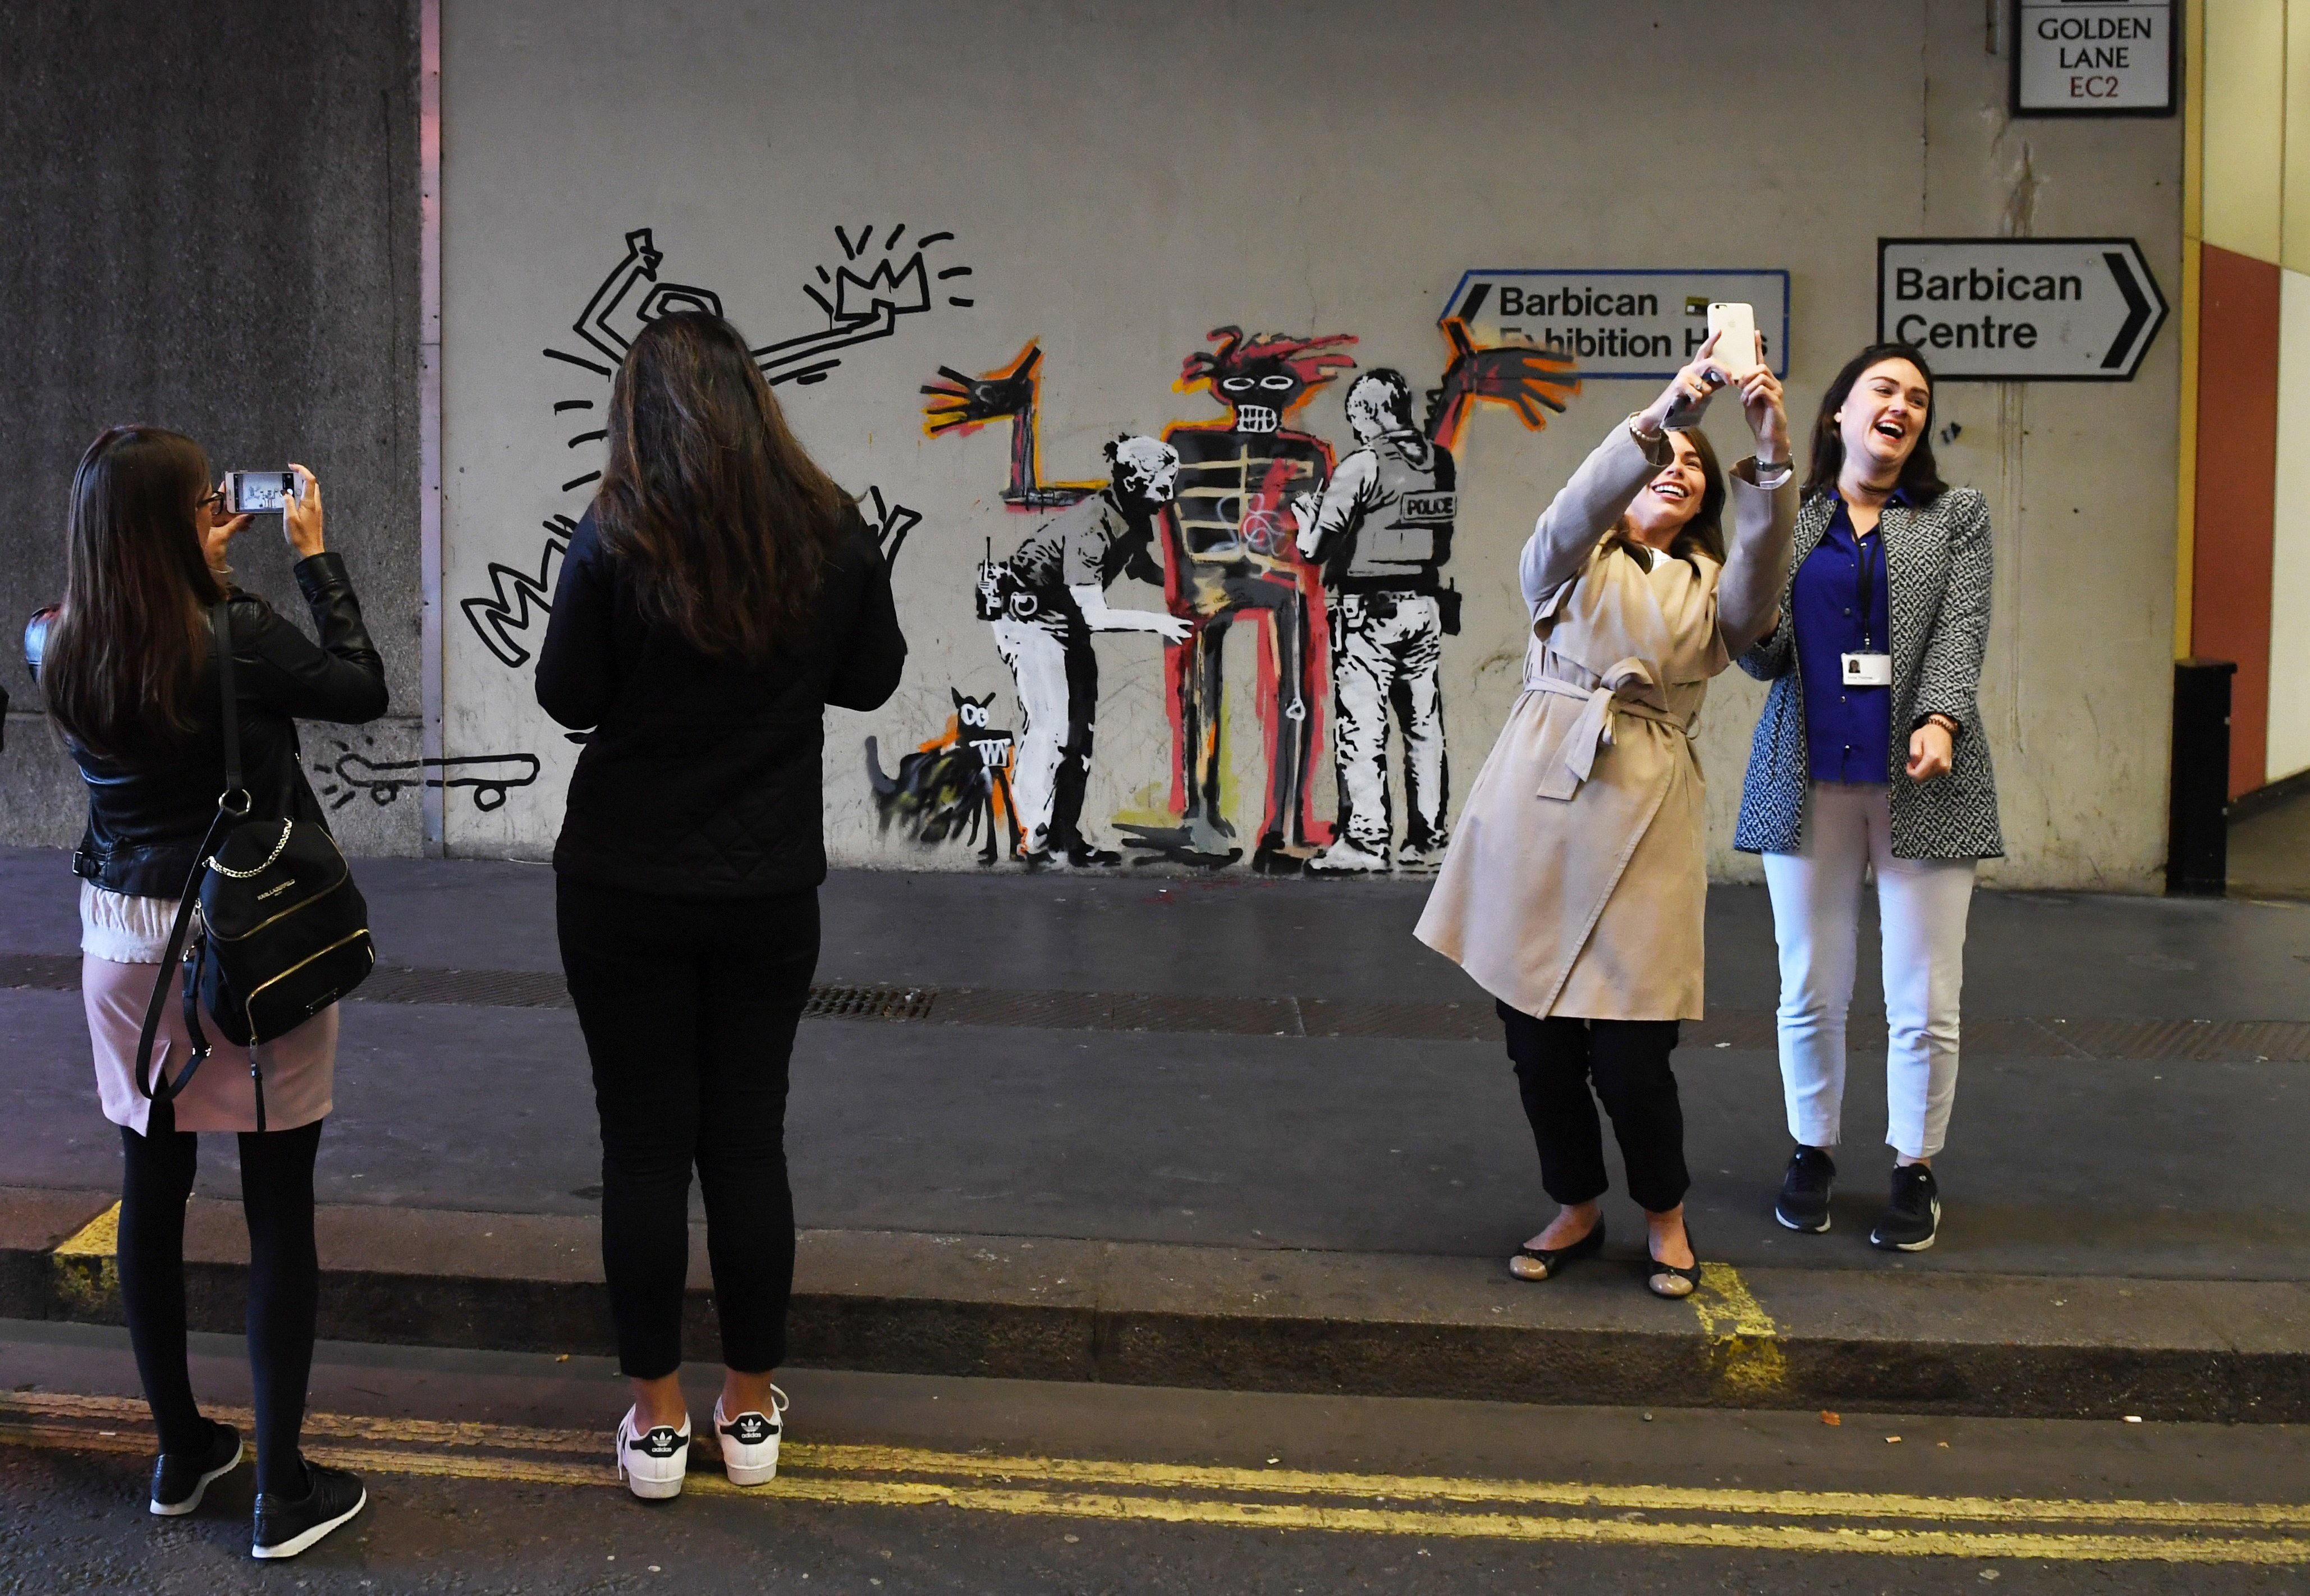  Dos murales de Banksy aparecen en Londres